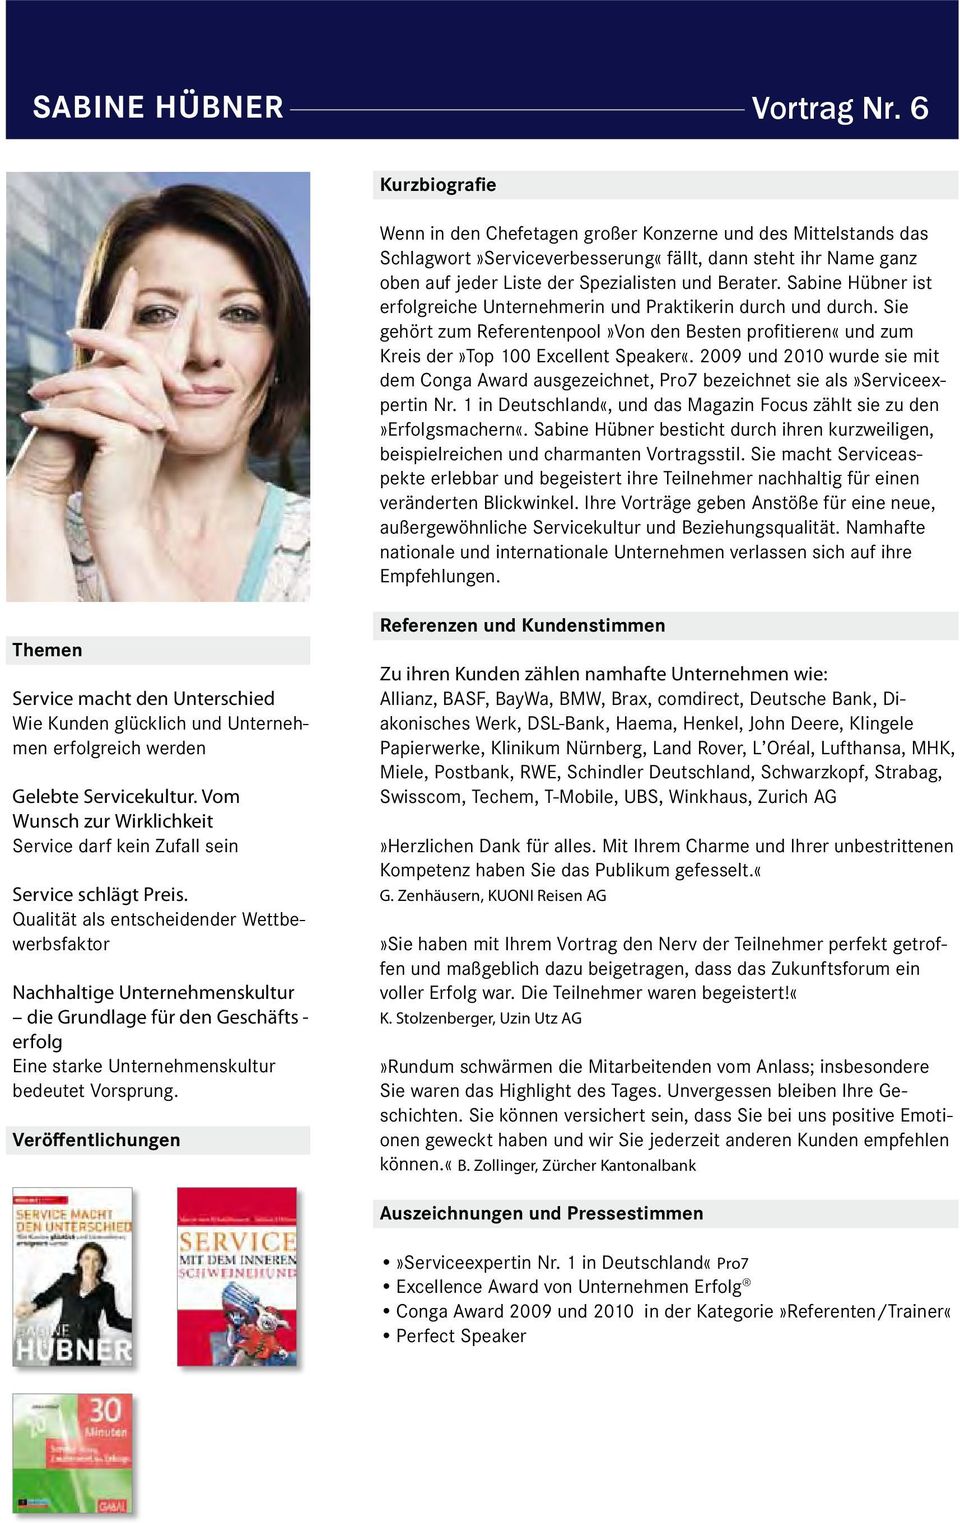 2009 und 2010 wurde sie mit dem Conga Award ausgezeichnet, Pro7 bezeichnet sie als»serviceexpertin Nr. 1 in Deutschland«, und das Magazin Focus zählt sie zu den»erfolgsmachern«.